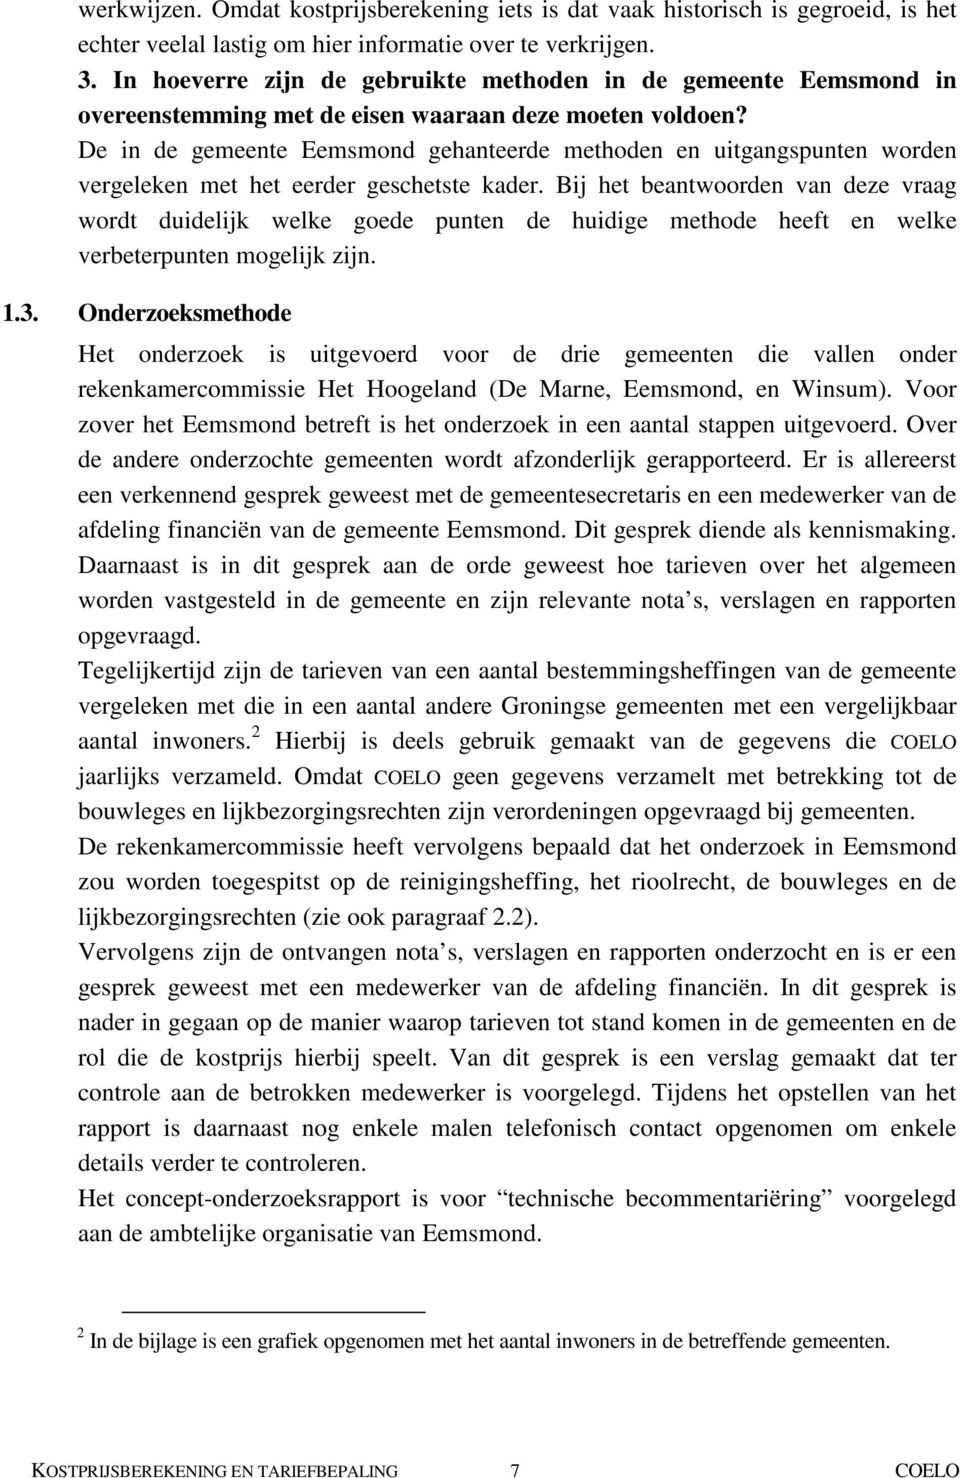 De in de gemeente Eemsmond gehanteerde methoden en uitgangspunten worden vergeleken met het eerder geschetste kader.